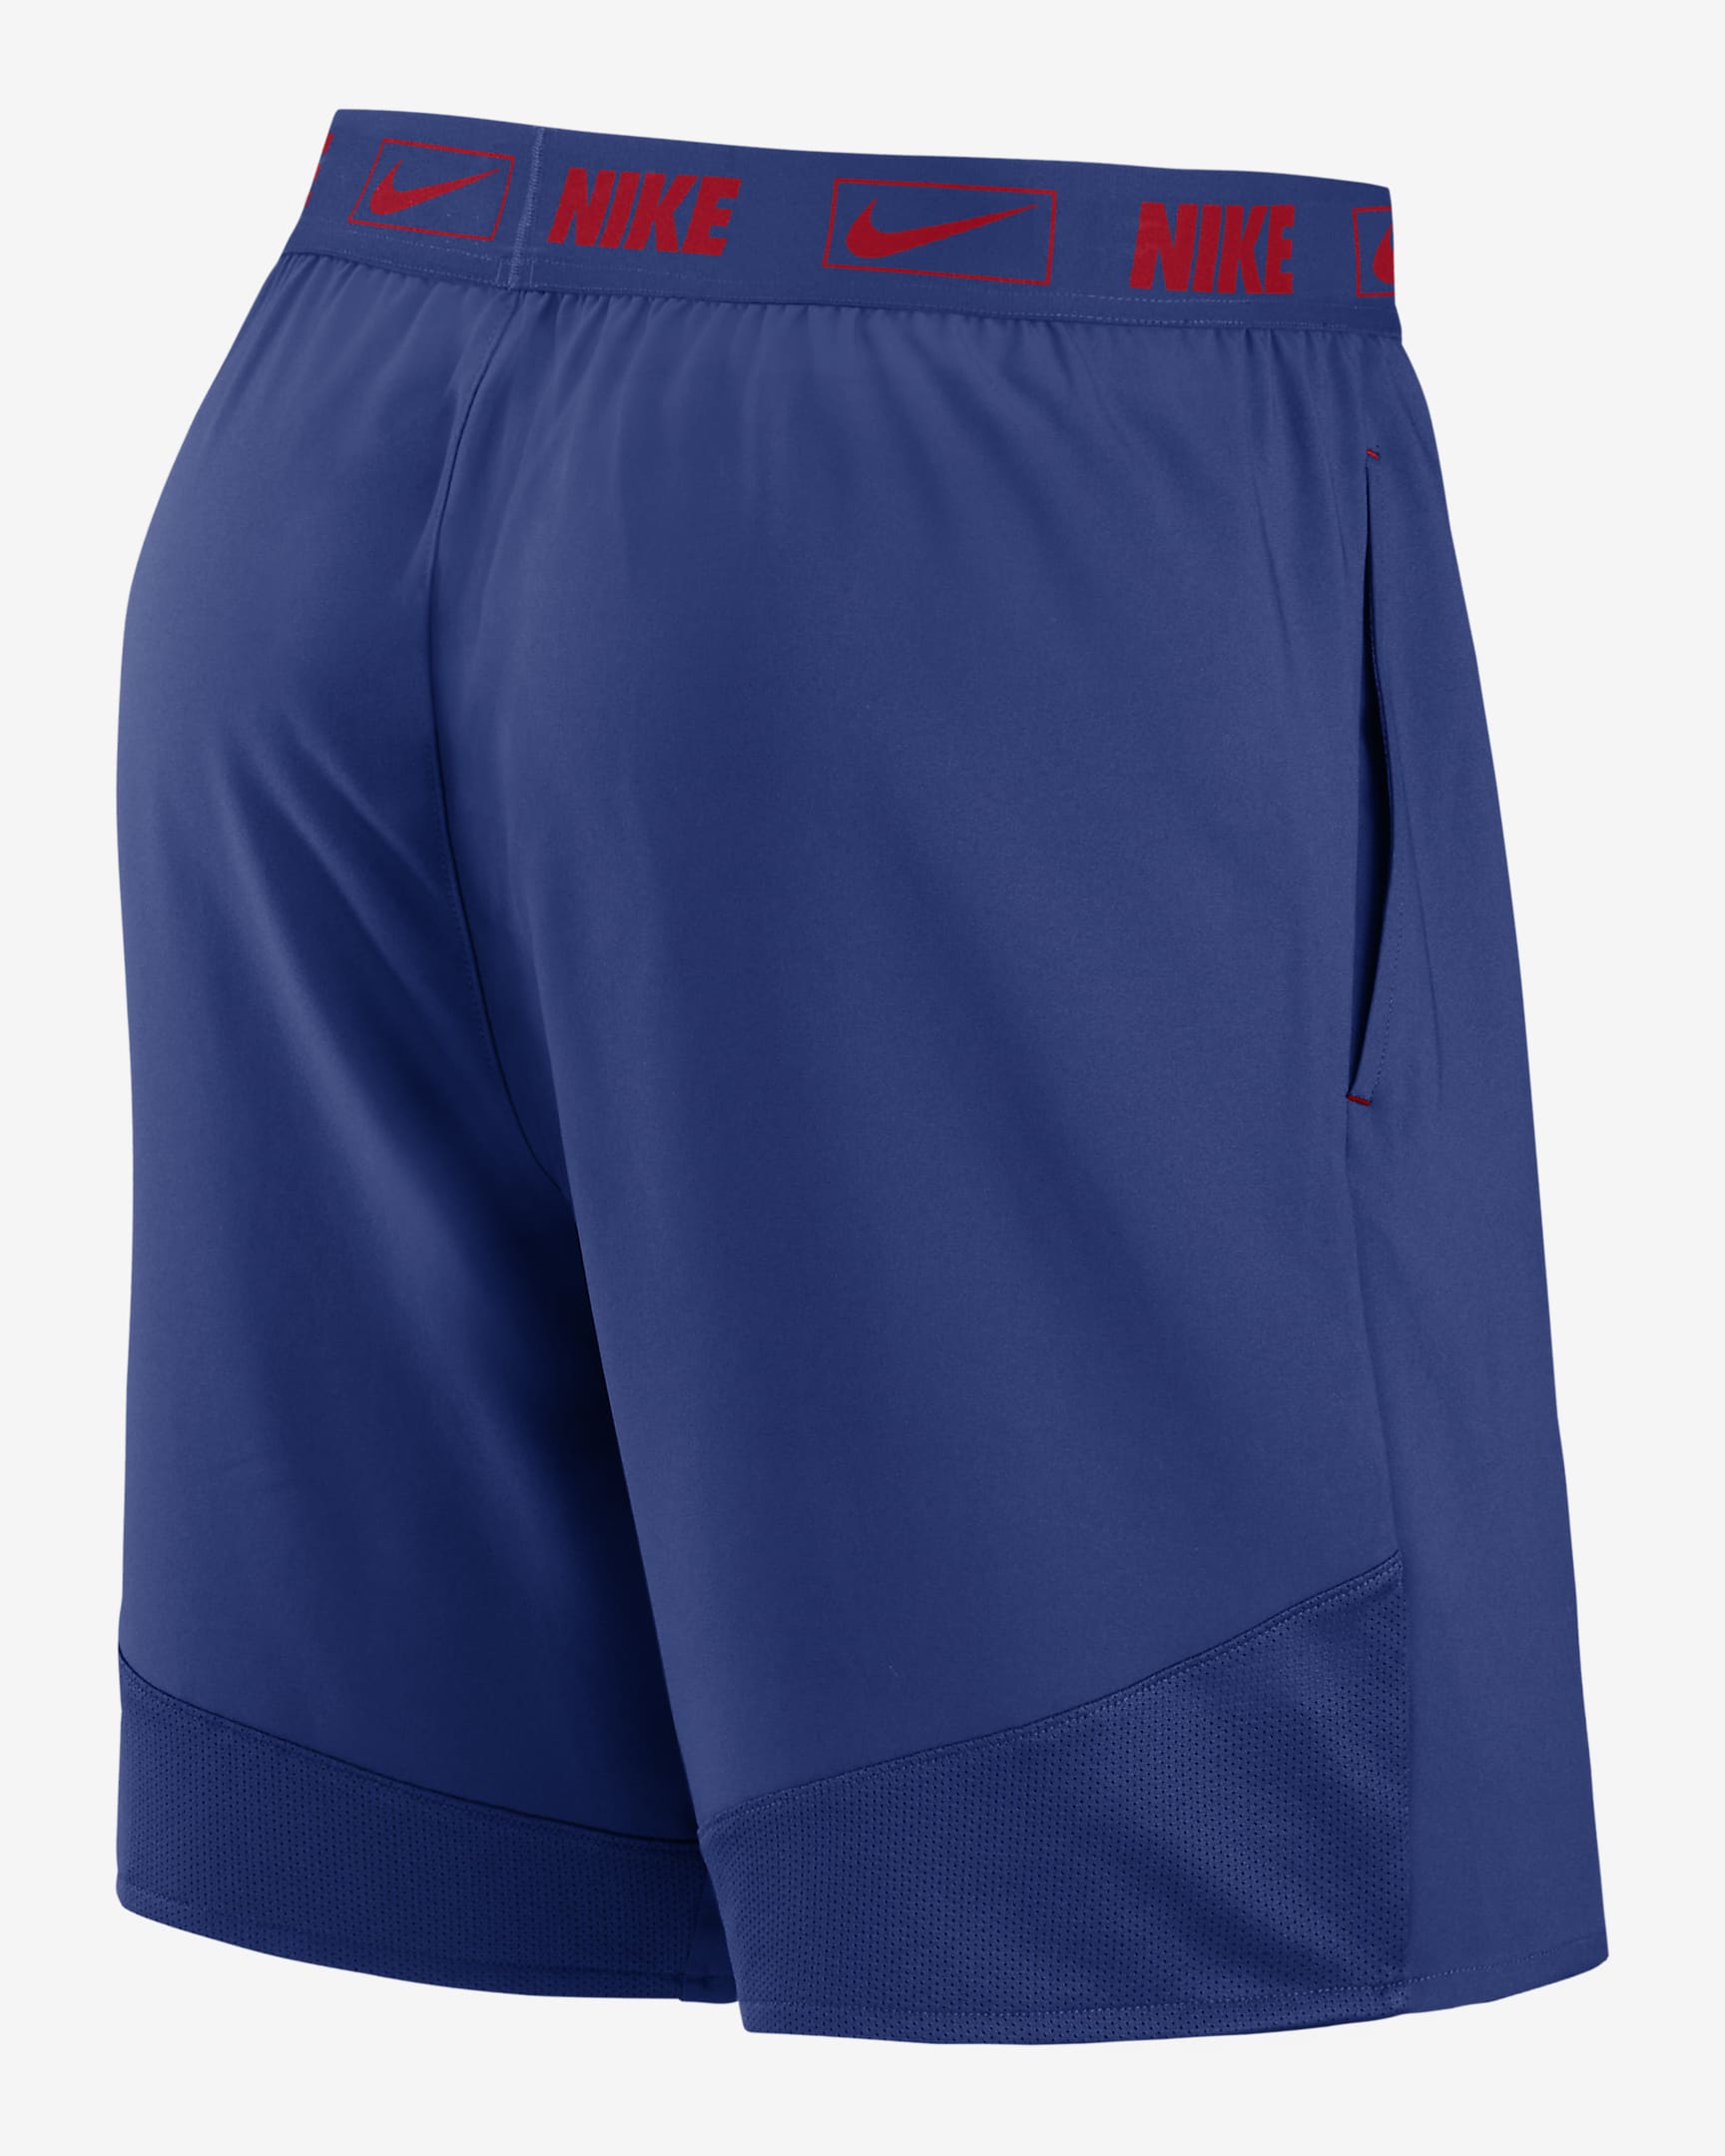 Shorts para hombre Nike Dri-FIT Primetime Logo (MLB Texas Rangers ...